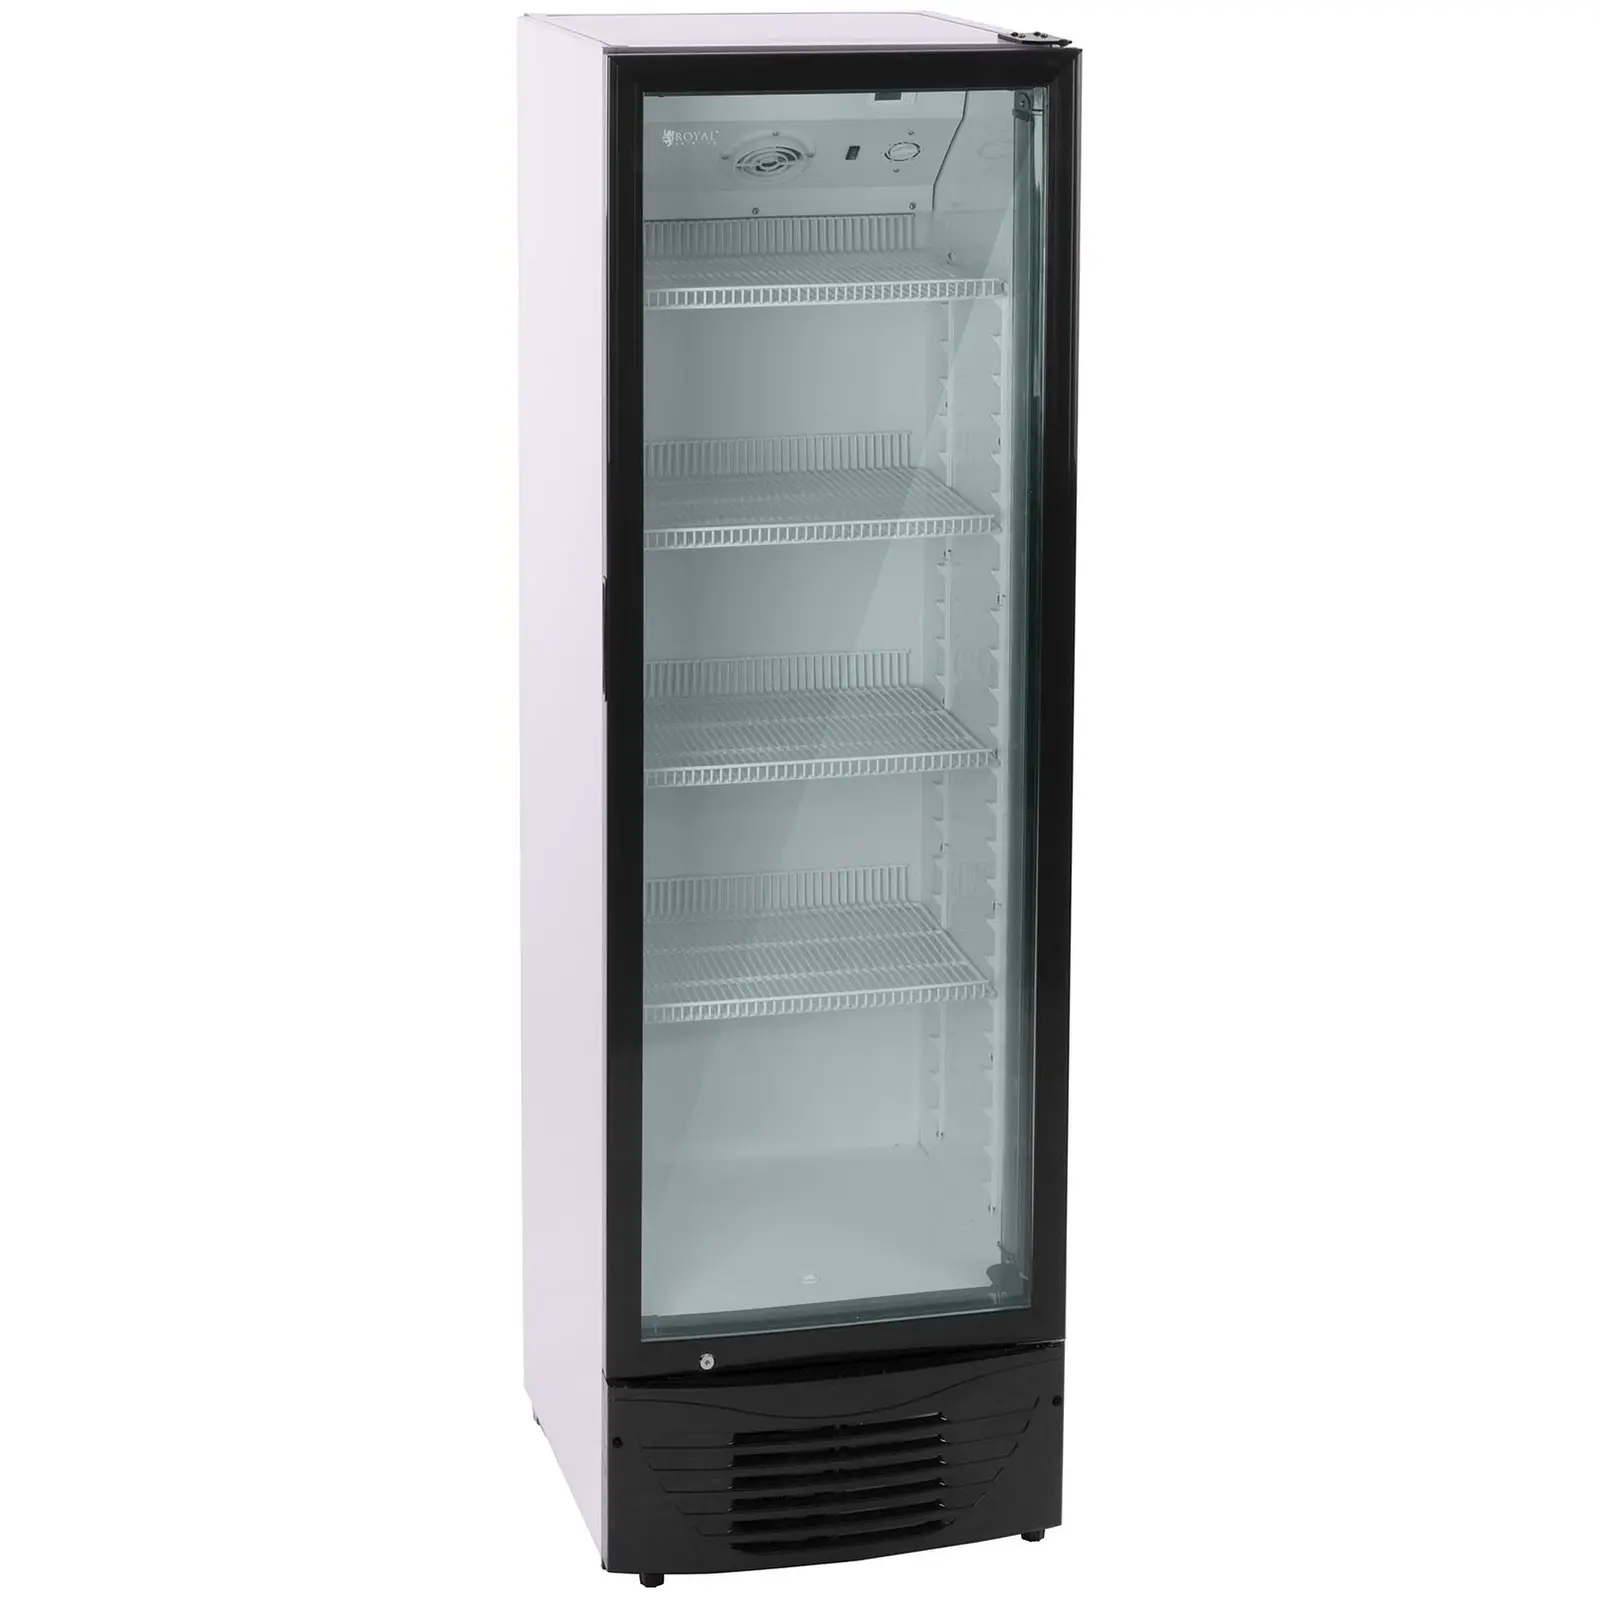 B-Ware Flaschenkühlschrank - 320 L - LED - schwarzer Rahmen